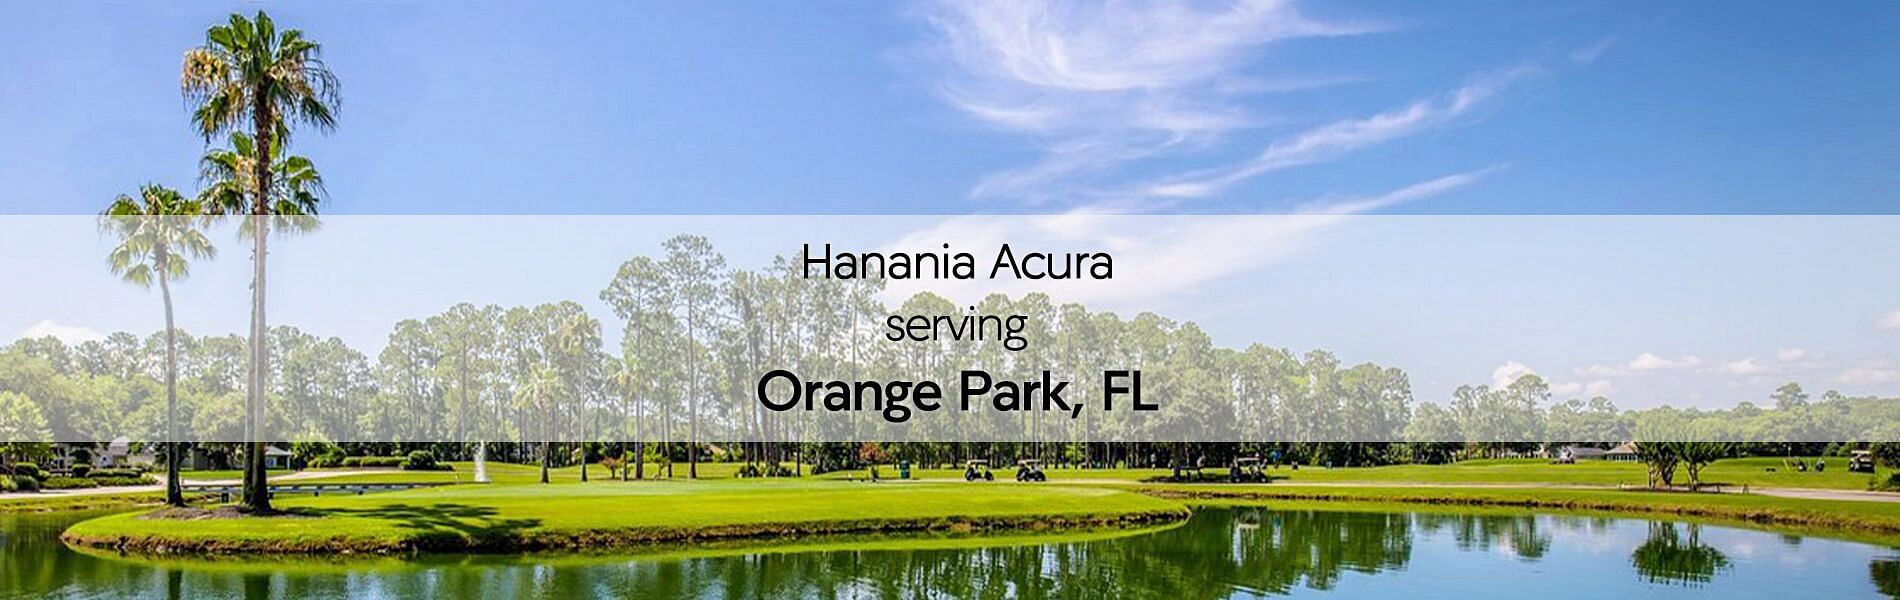 Orange Park, FL